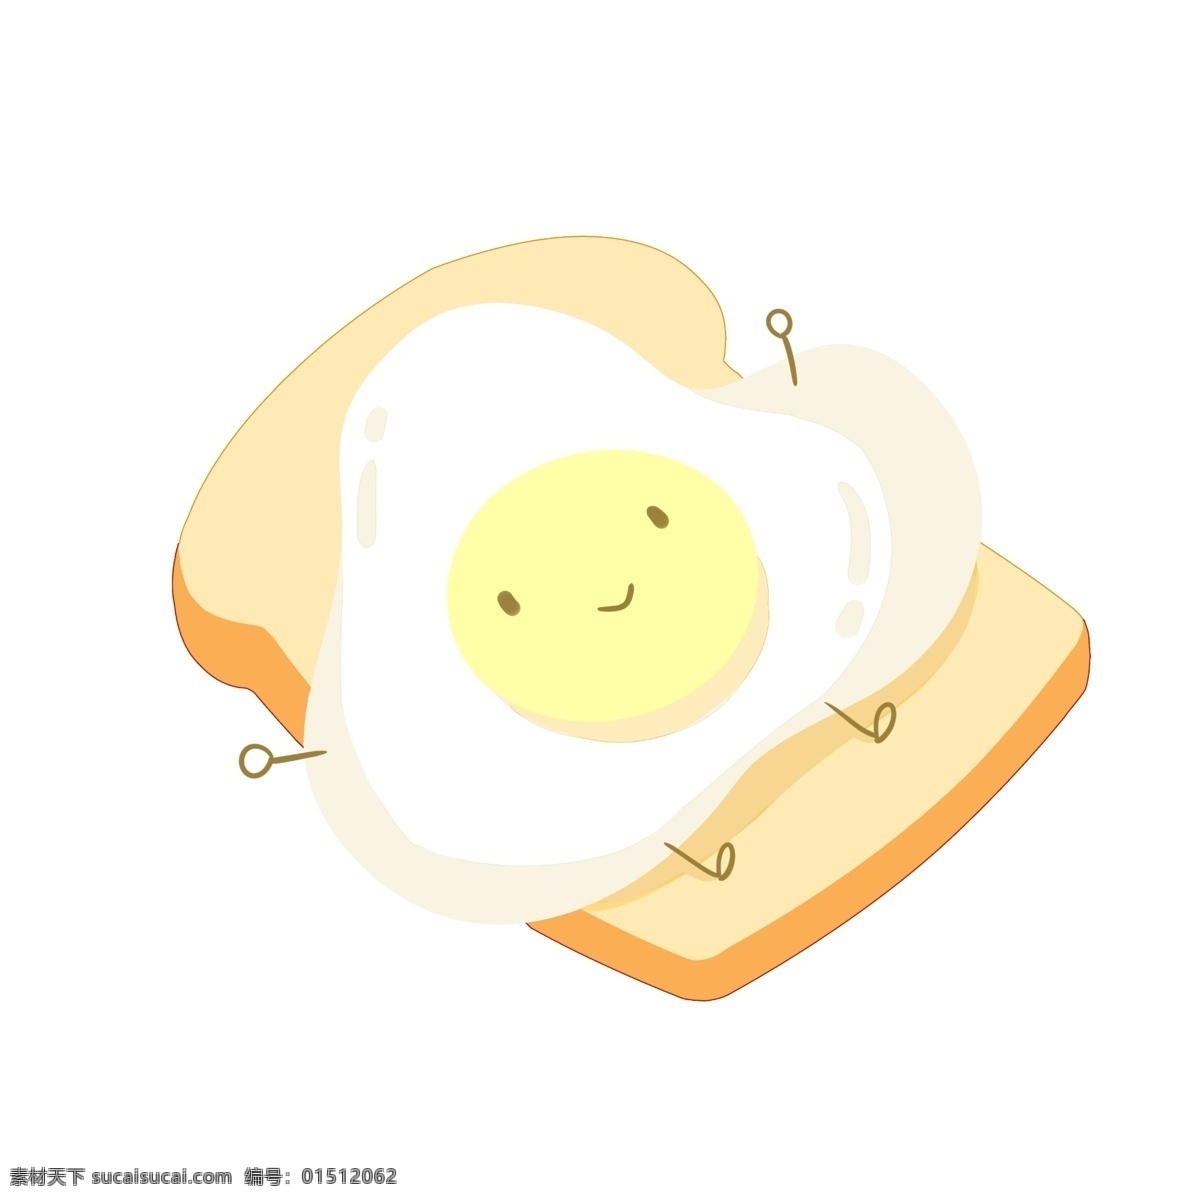 黄色面包鸡蛋 鸡蛋 营养 早餐